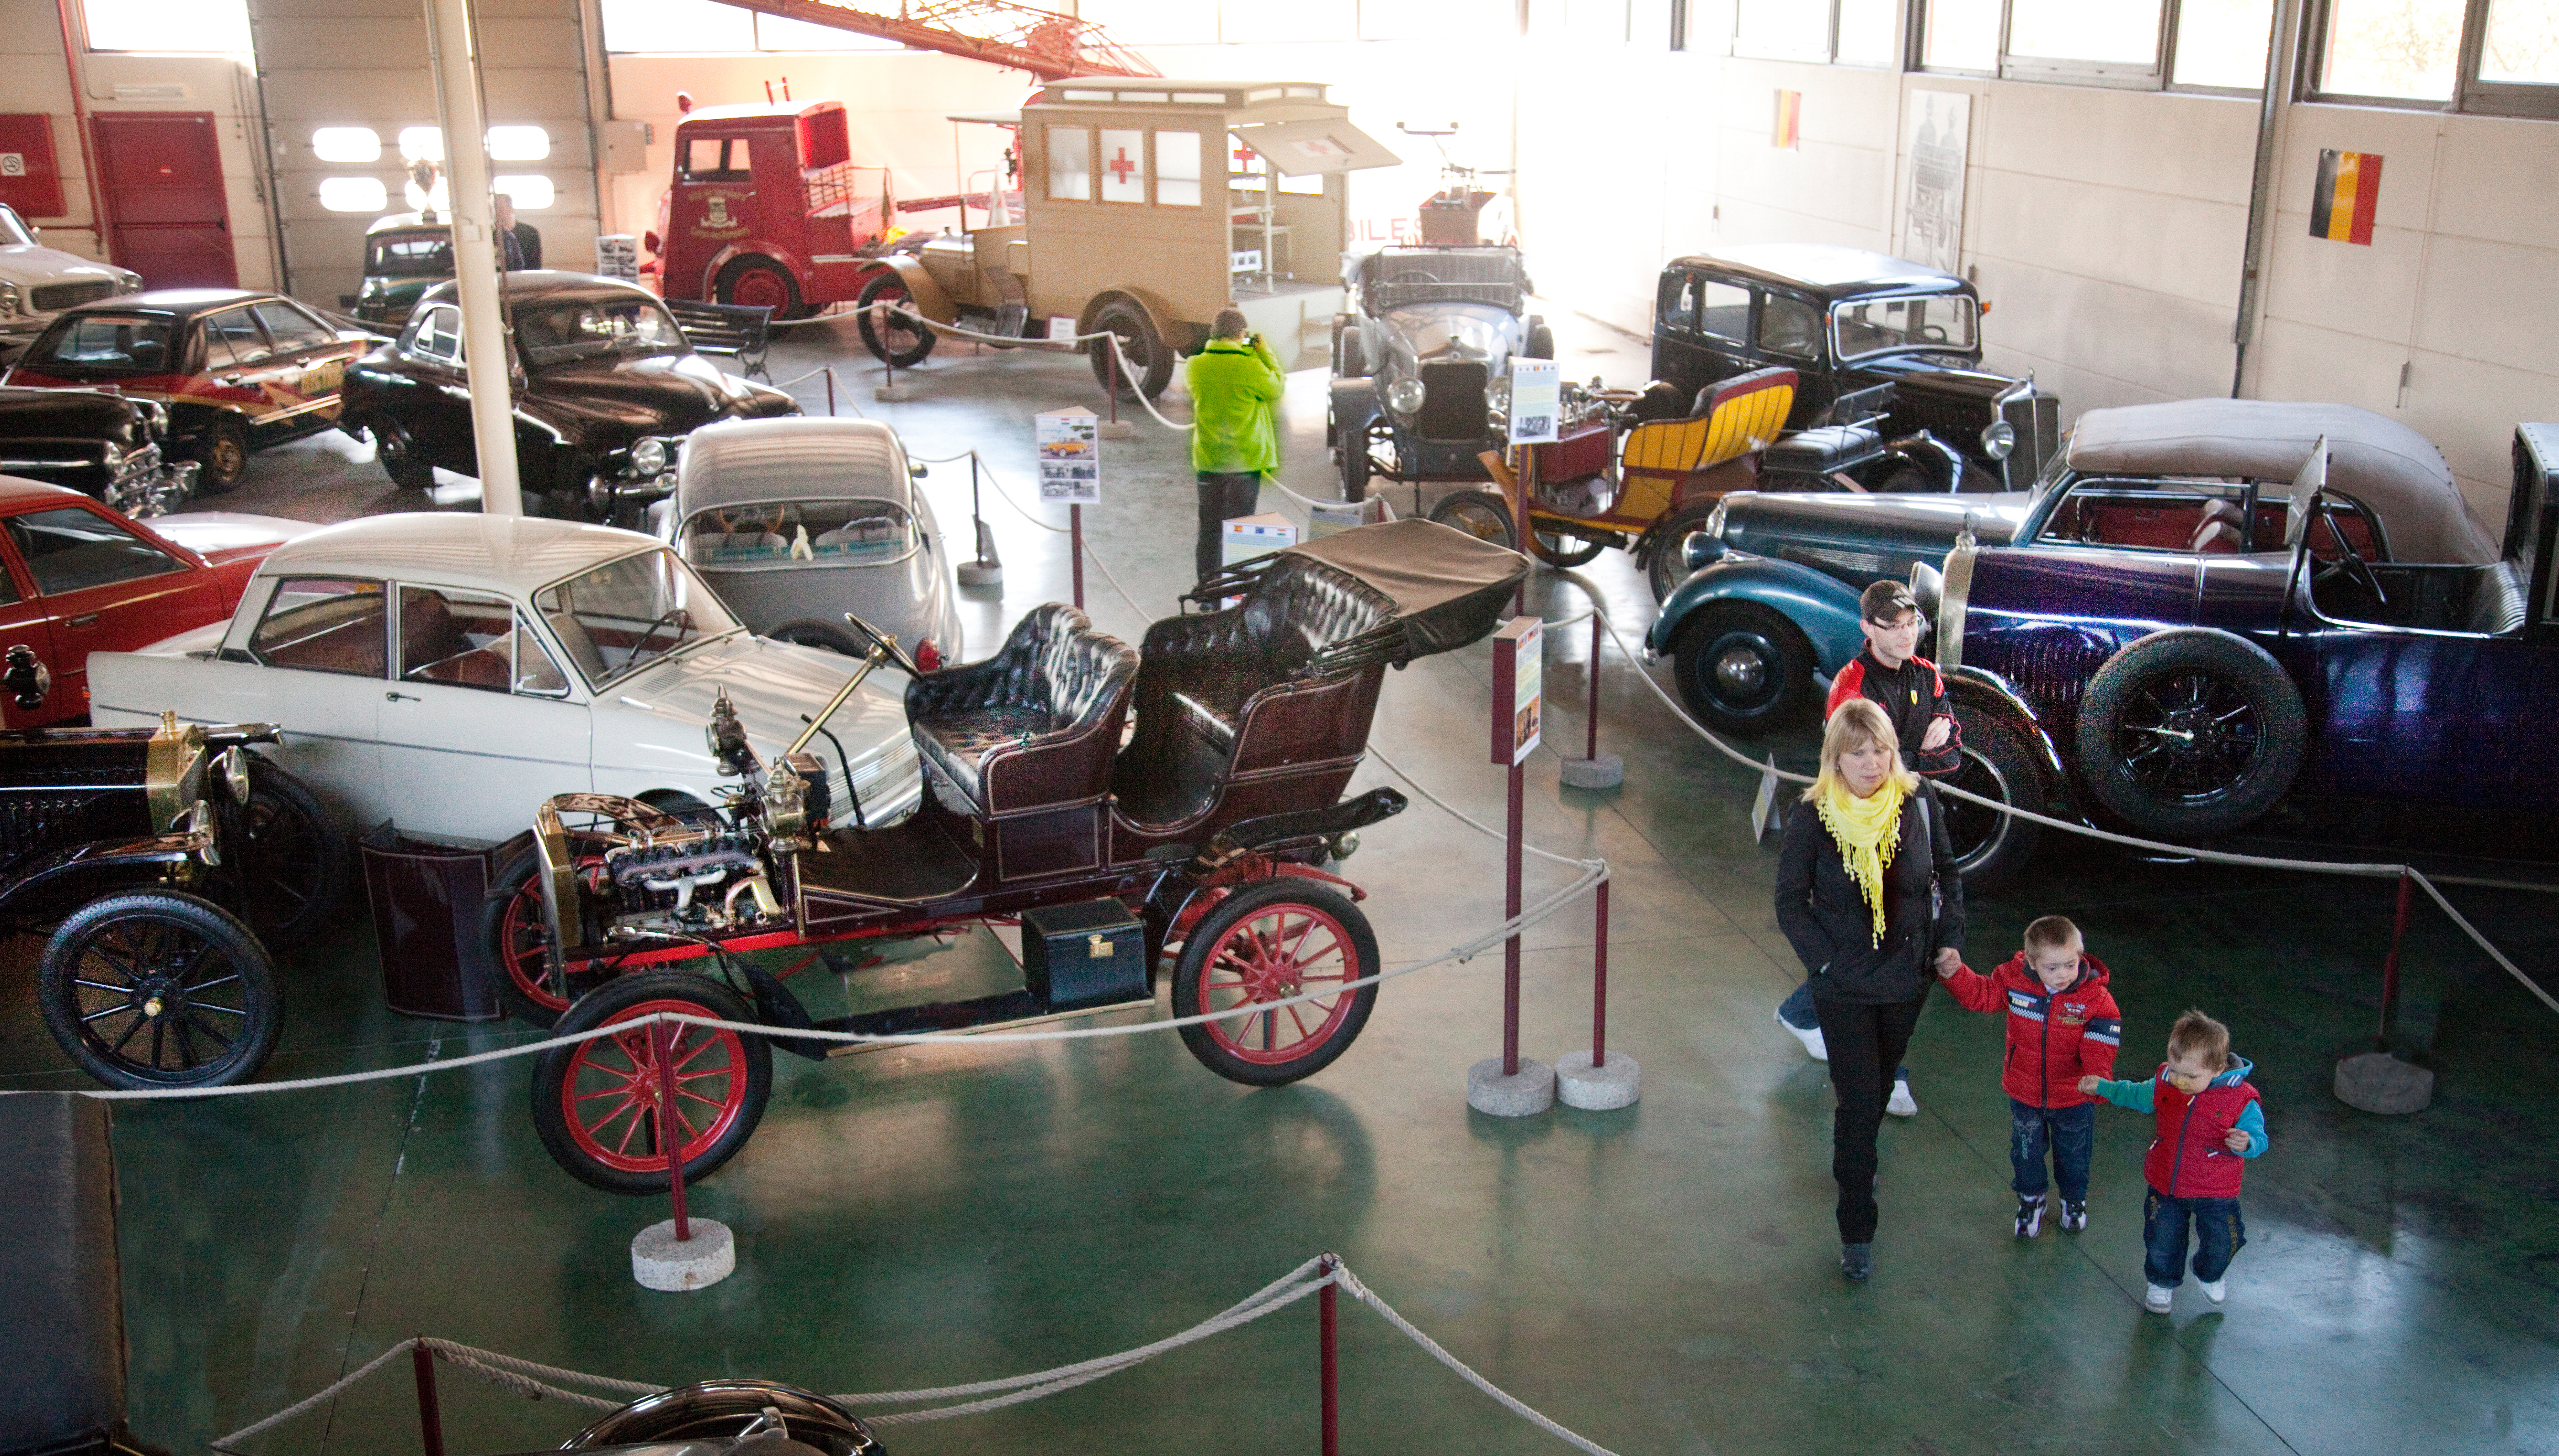 Découvrez l'histoire de l'automobile et du transport routier depuis 1895 au Musée de l'Auto Mahymobiles à Leuze-en-Hainaut